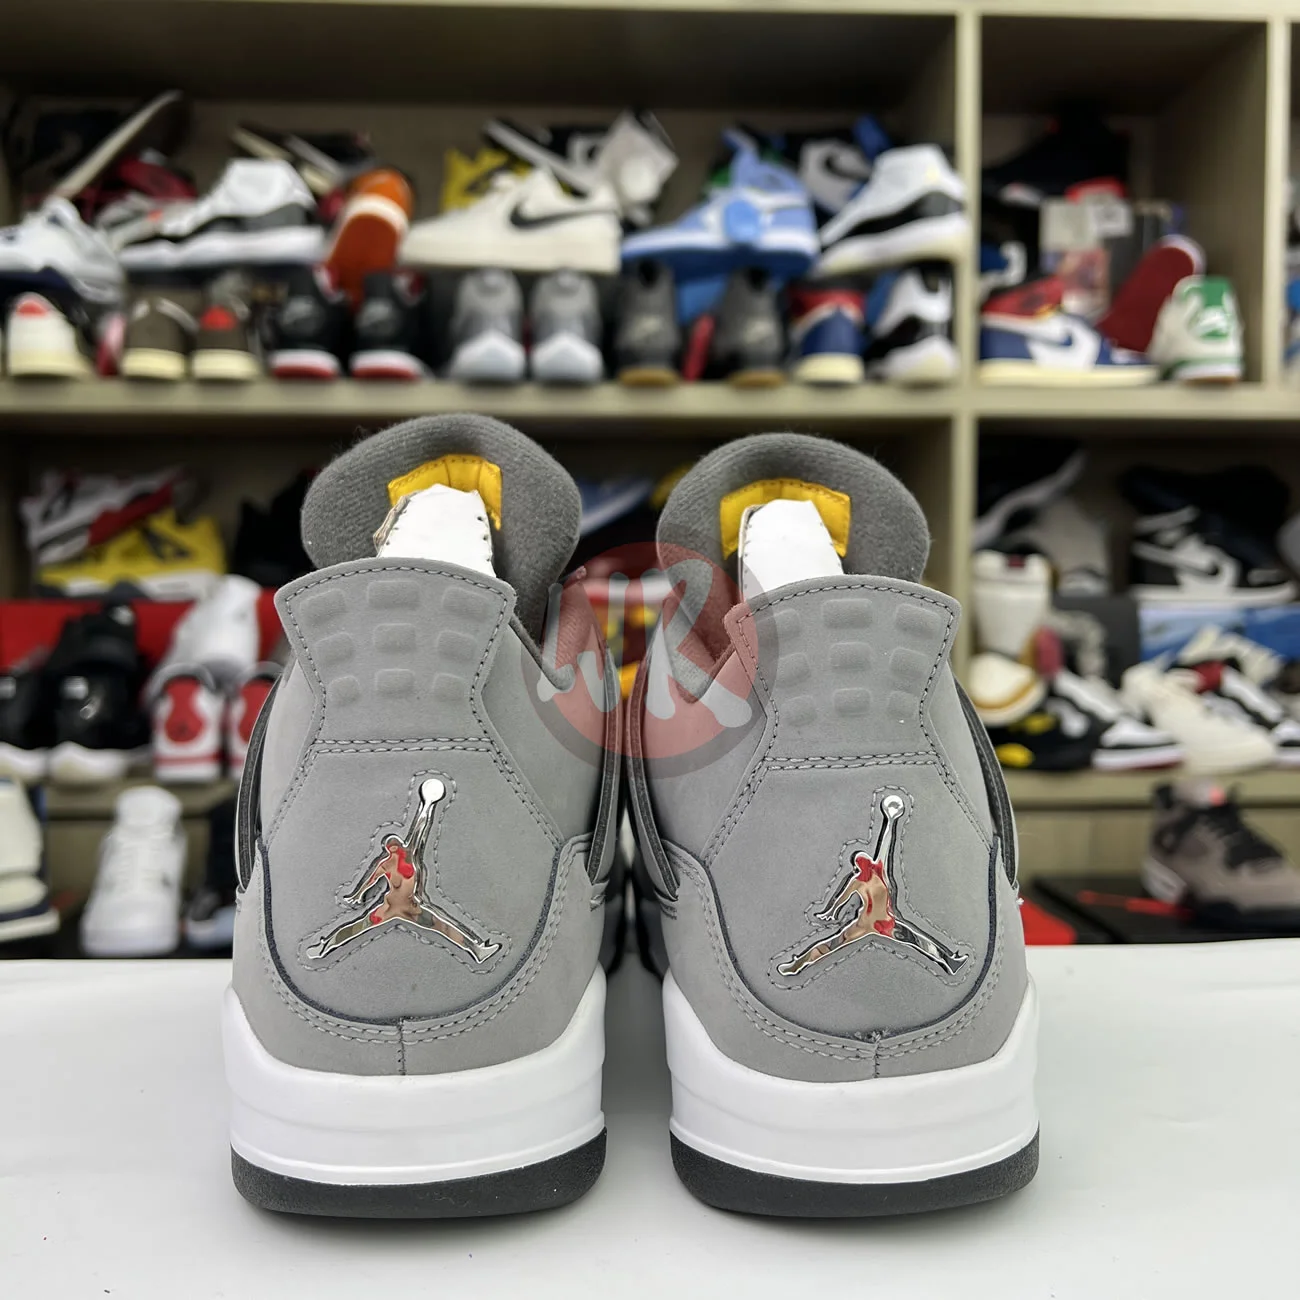 Air Jordan 4 Retro Cool Grey 2019 308497 007 Ljr Sneakers (21) - bc-ljr.com